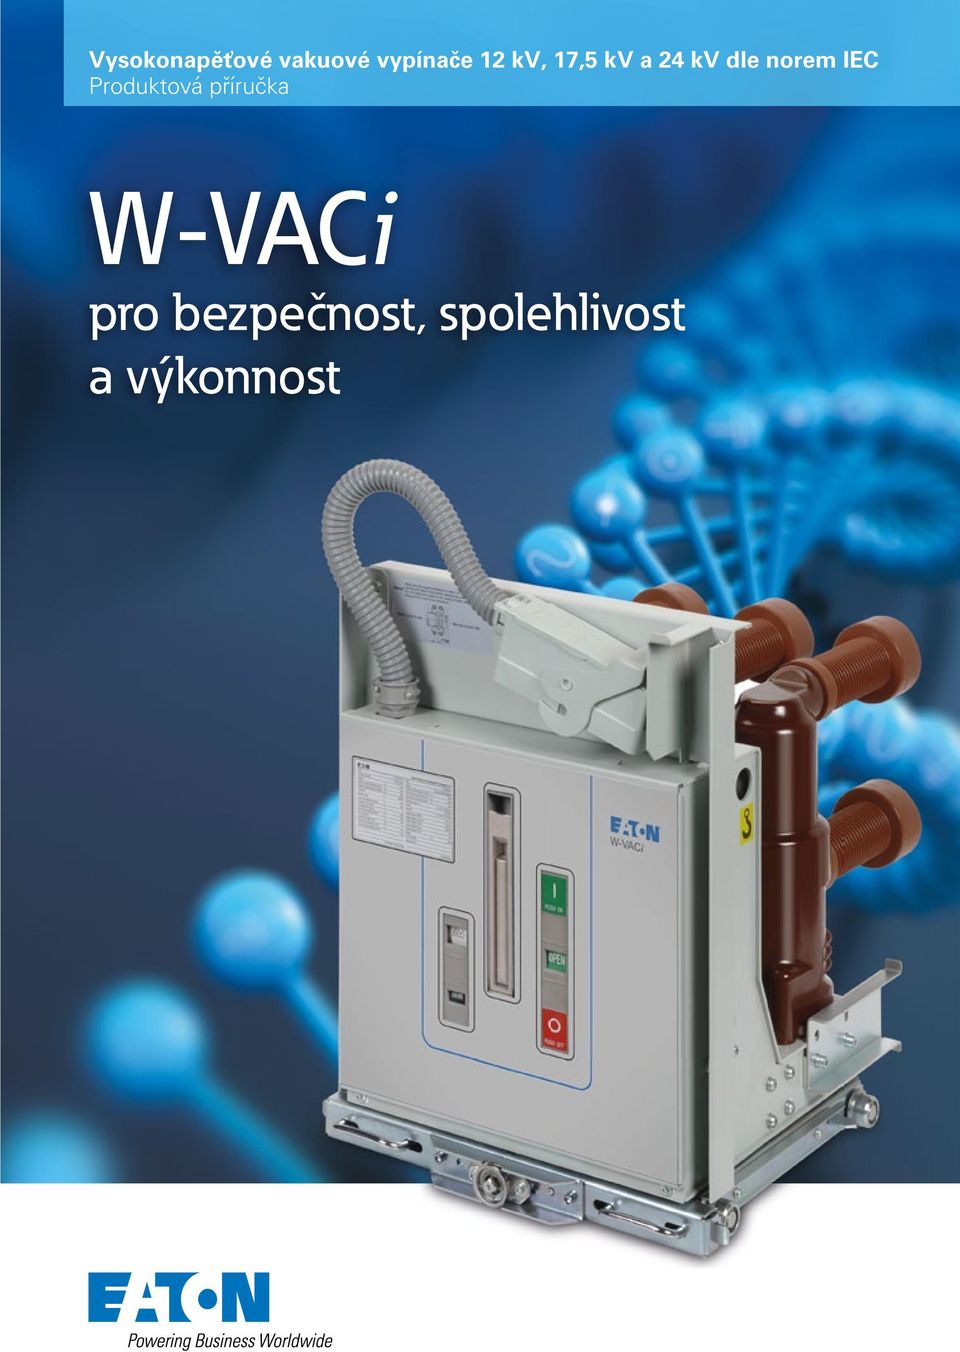 IEC Produktová příručka W-VACi